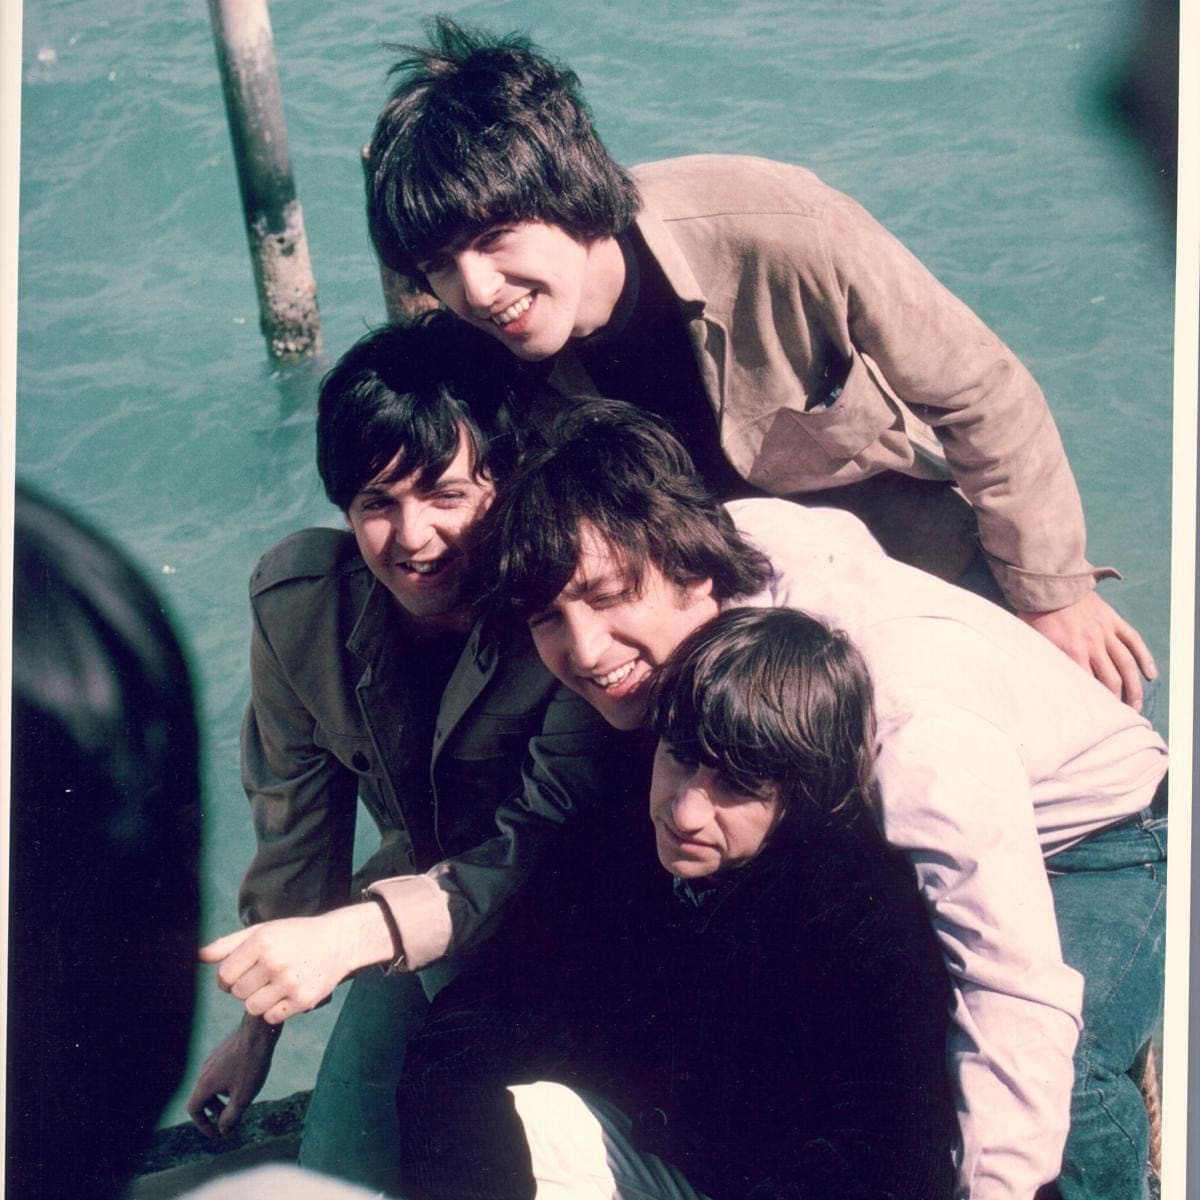 Beatles Filming The Movie "Help!"